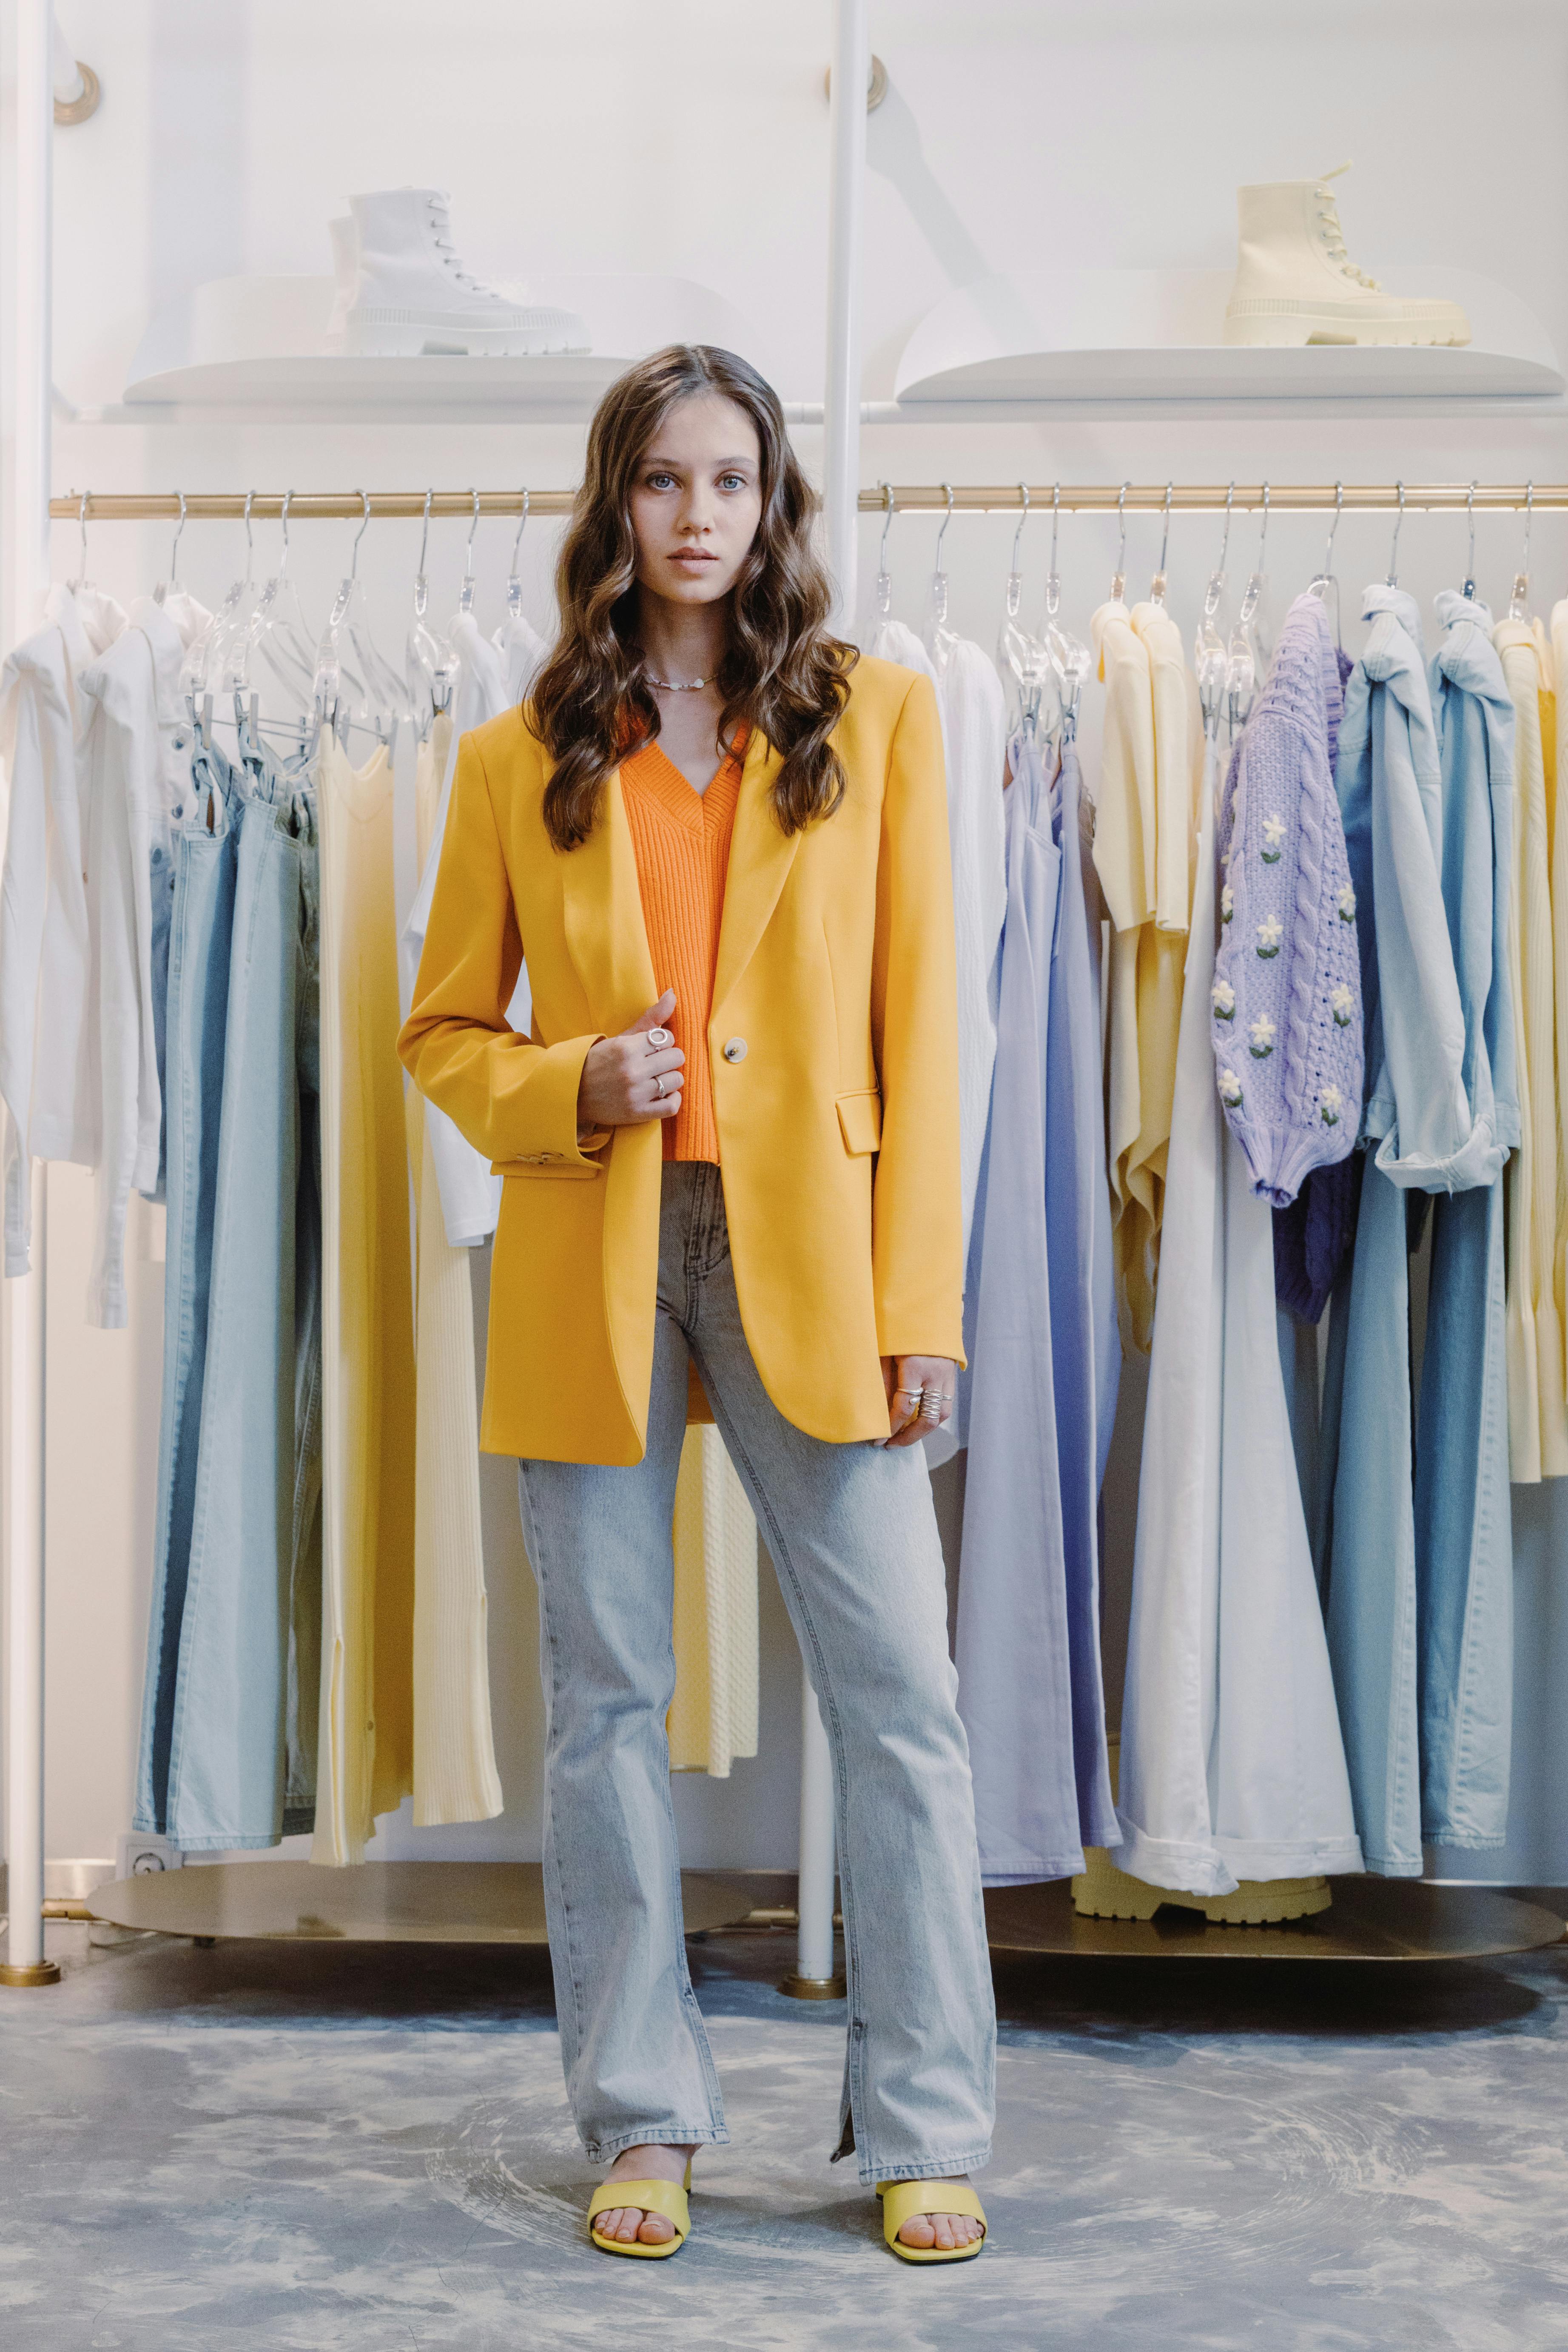 Une femme habillée et posant dans un magasin | Source : Pexels